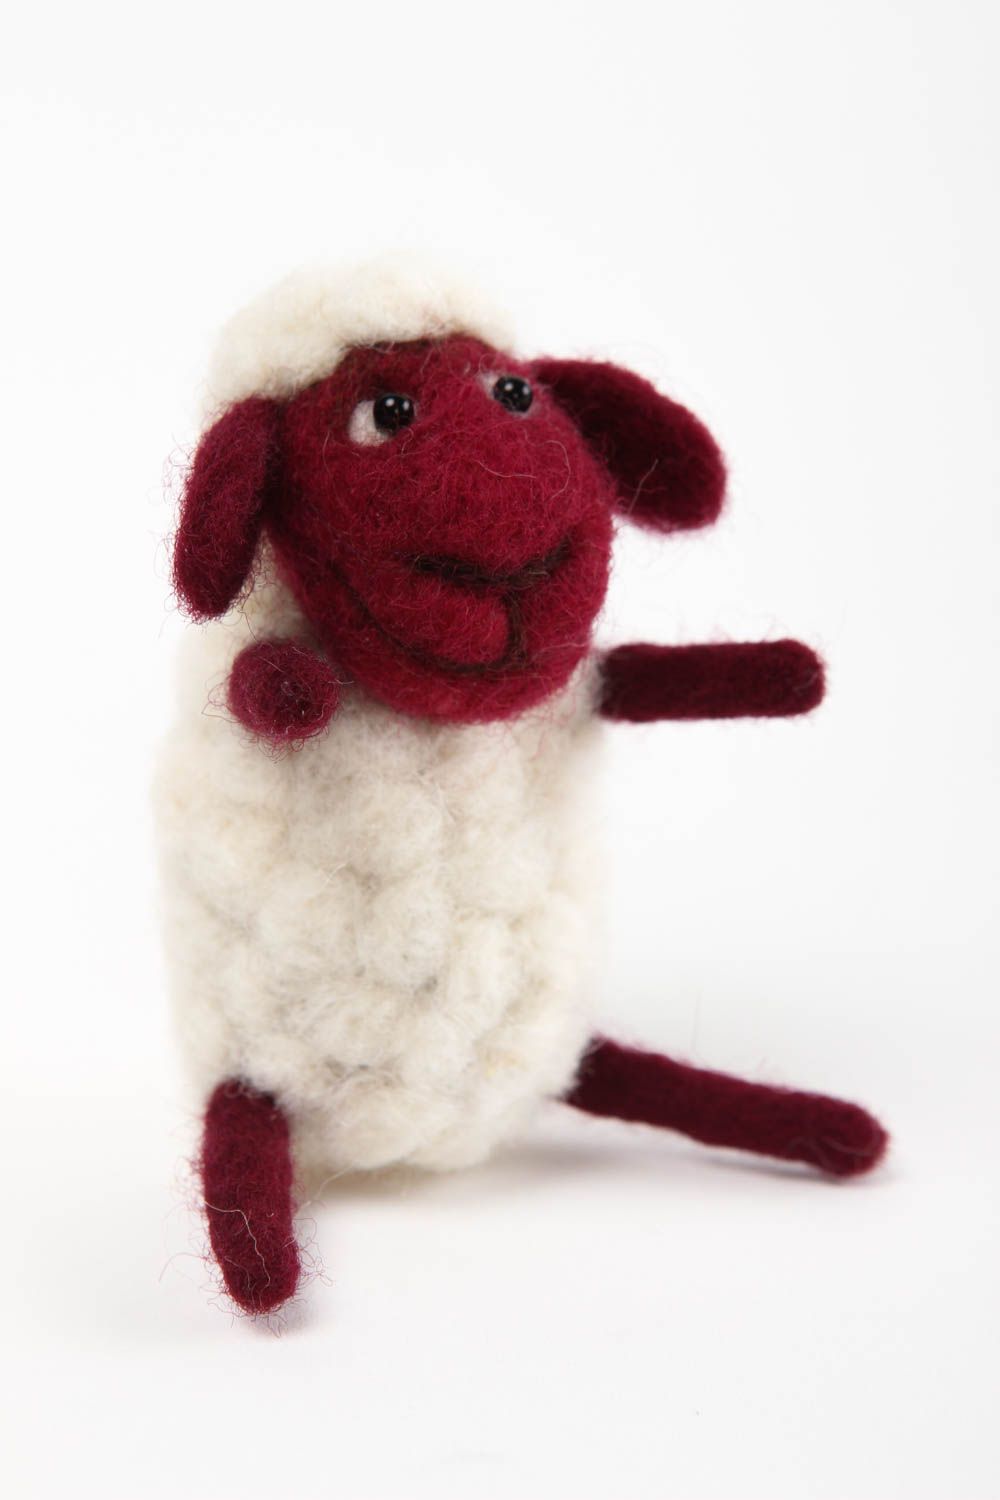  Игрушка ручной работы интерьерная игрушка милая овечка мягкая игрушка из шерсти фото 3